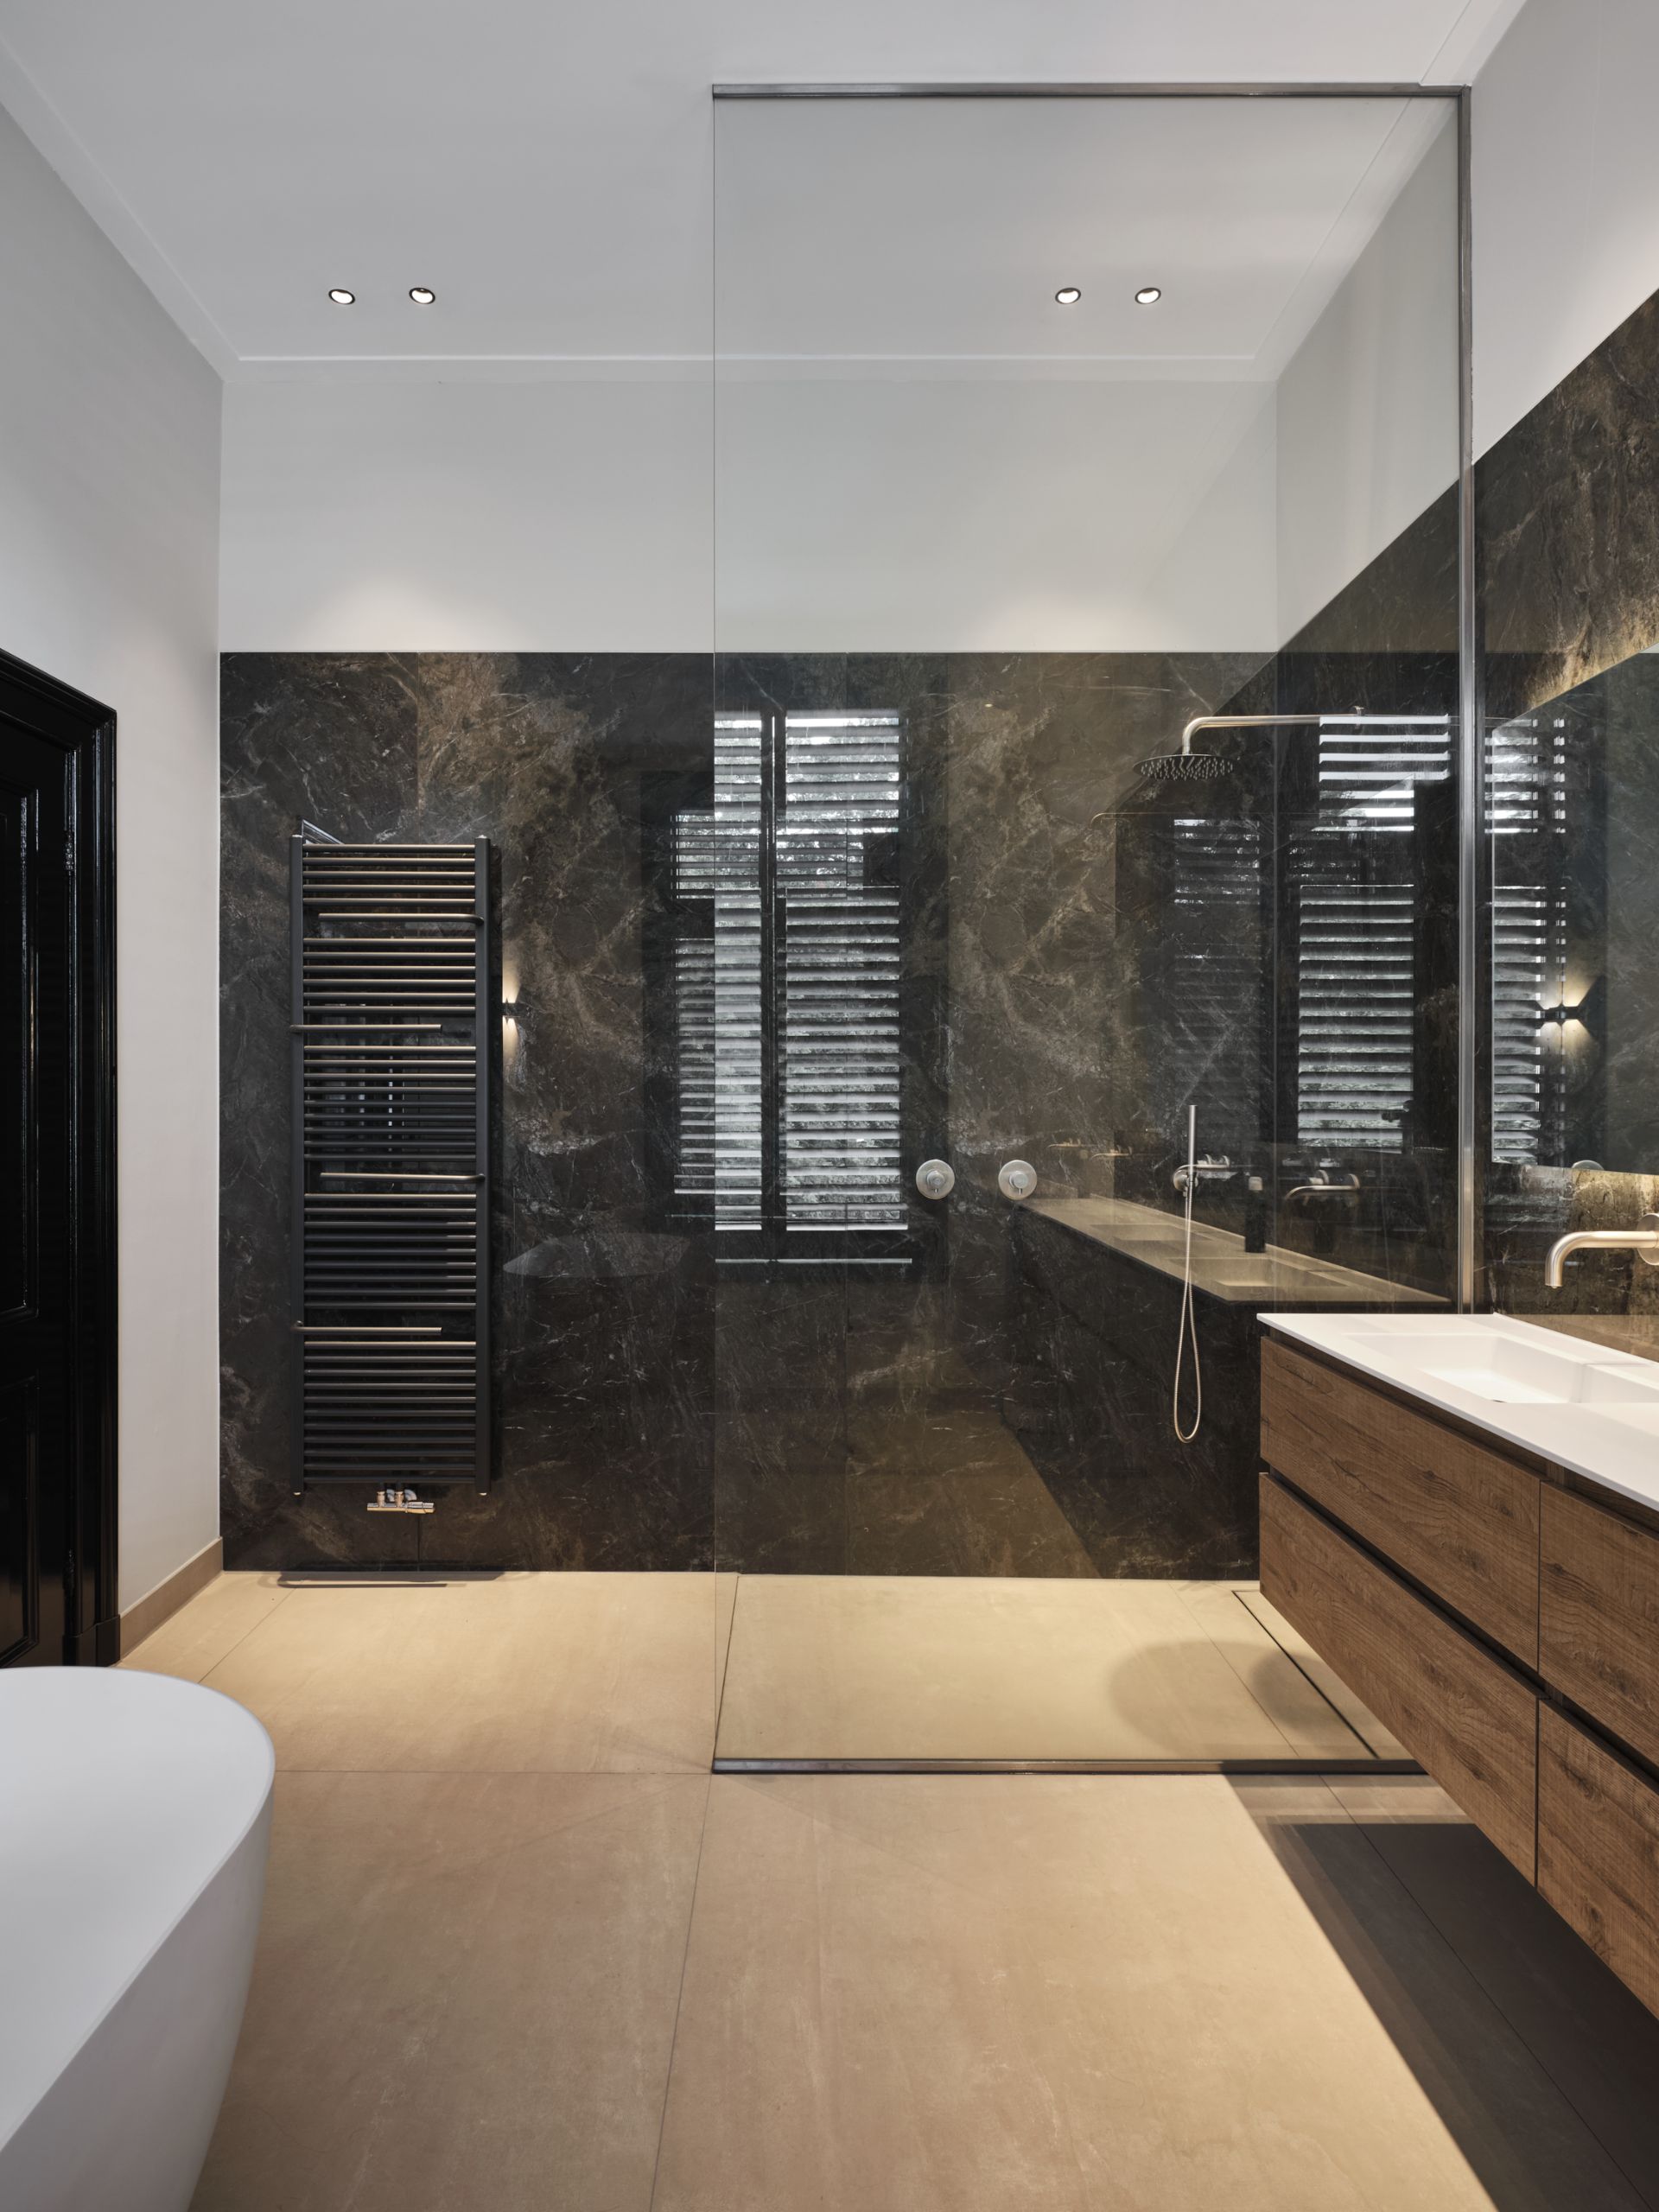 Foto: een badkamer met een moderne uitstraling      eerste kamer badkamers   002